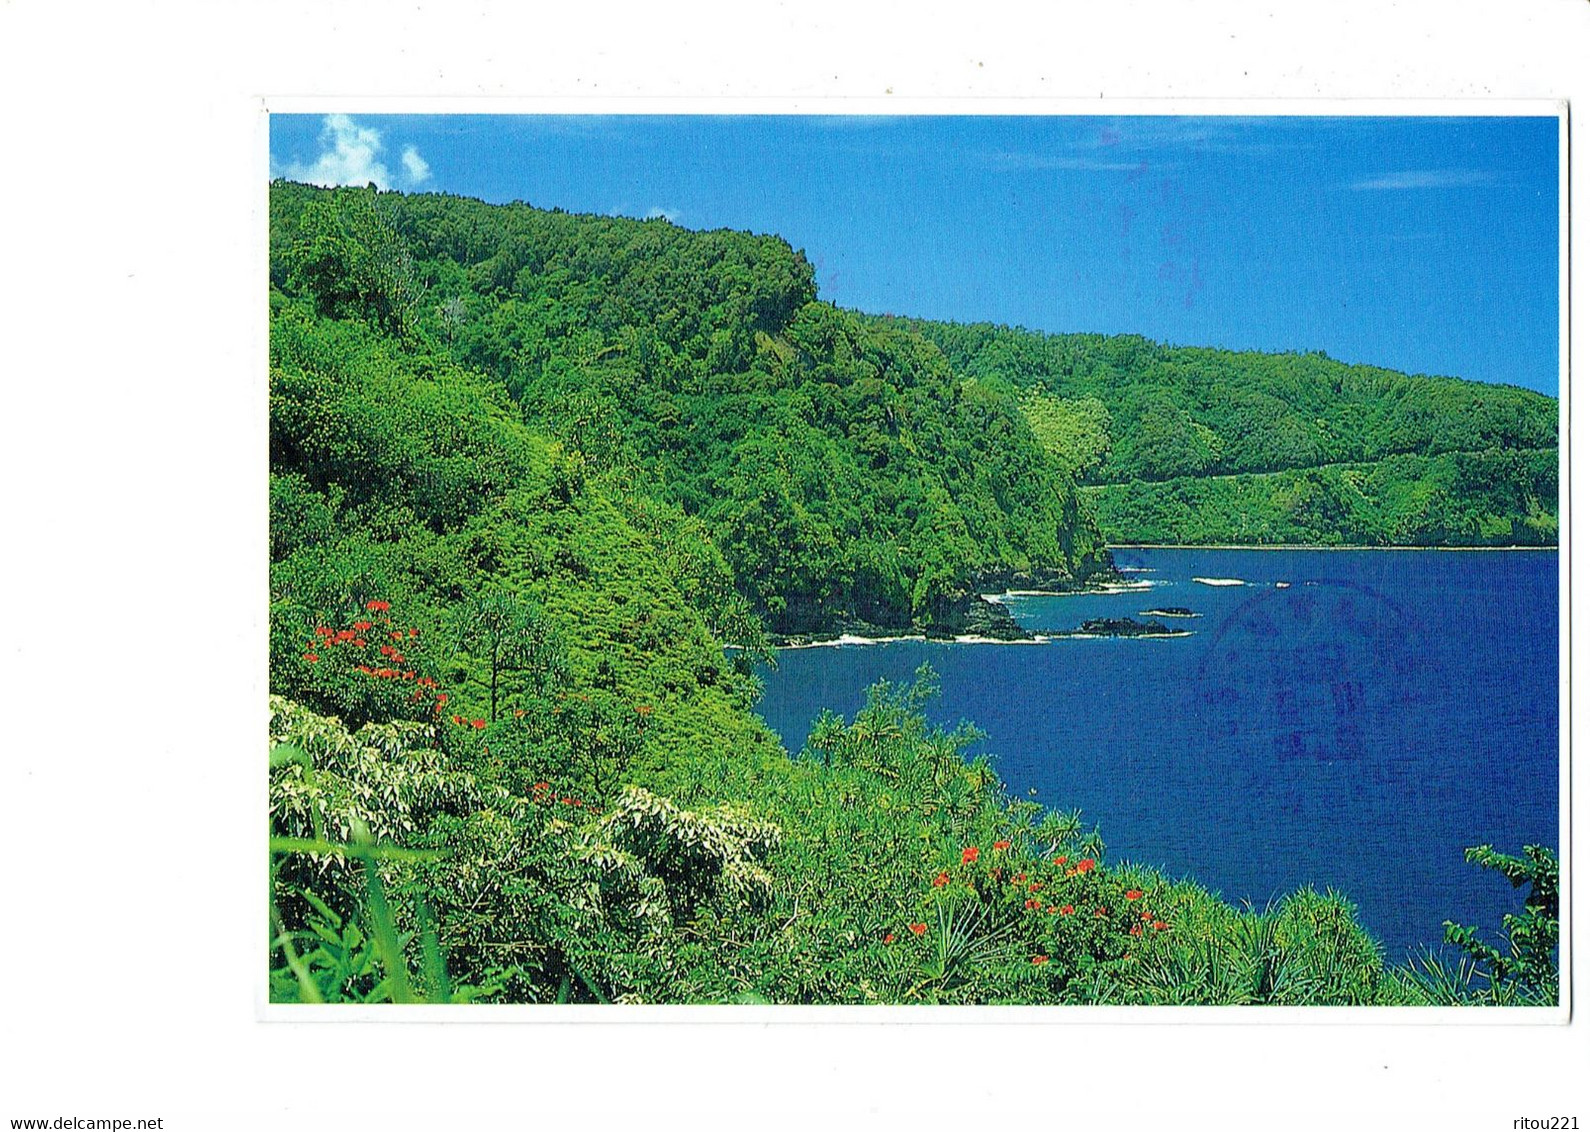 Cpm - Hāmākua Coast - Island Of Hawaii - 1993 - - Big Island Of Hawaii